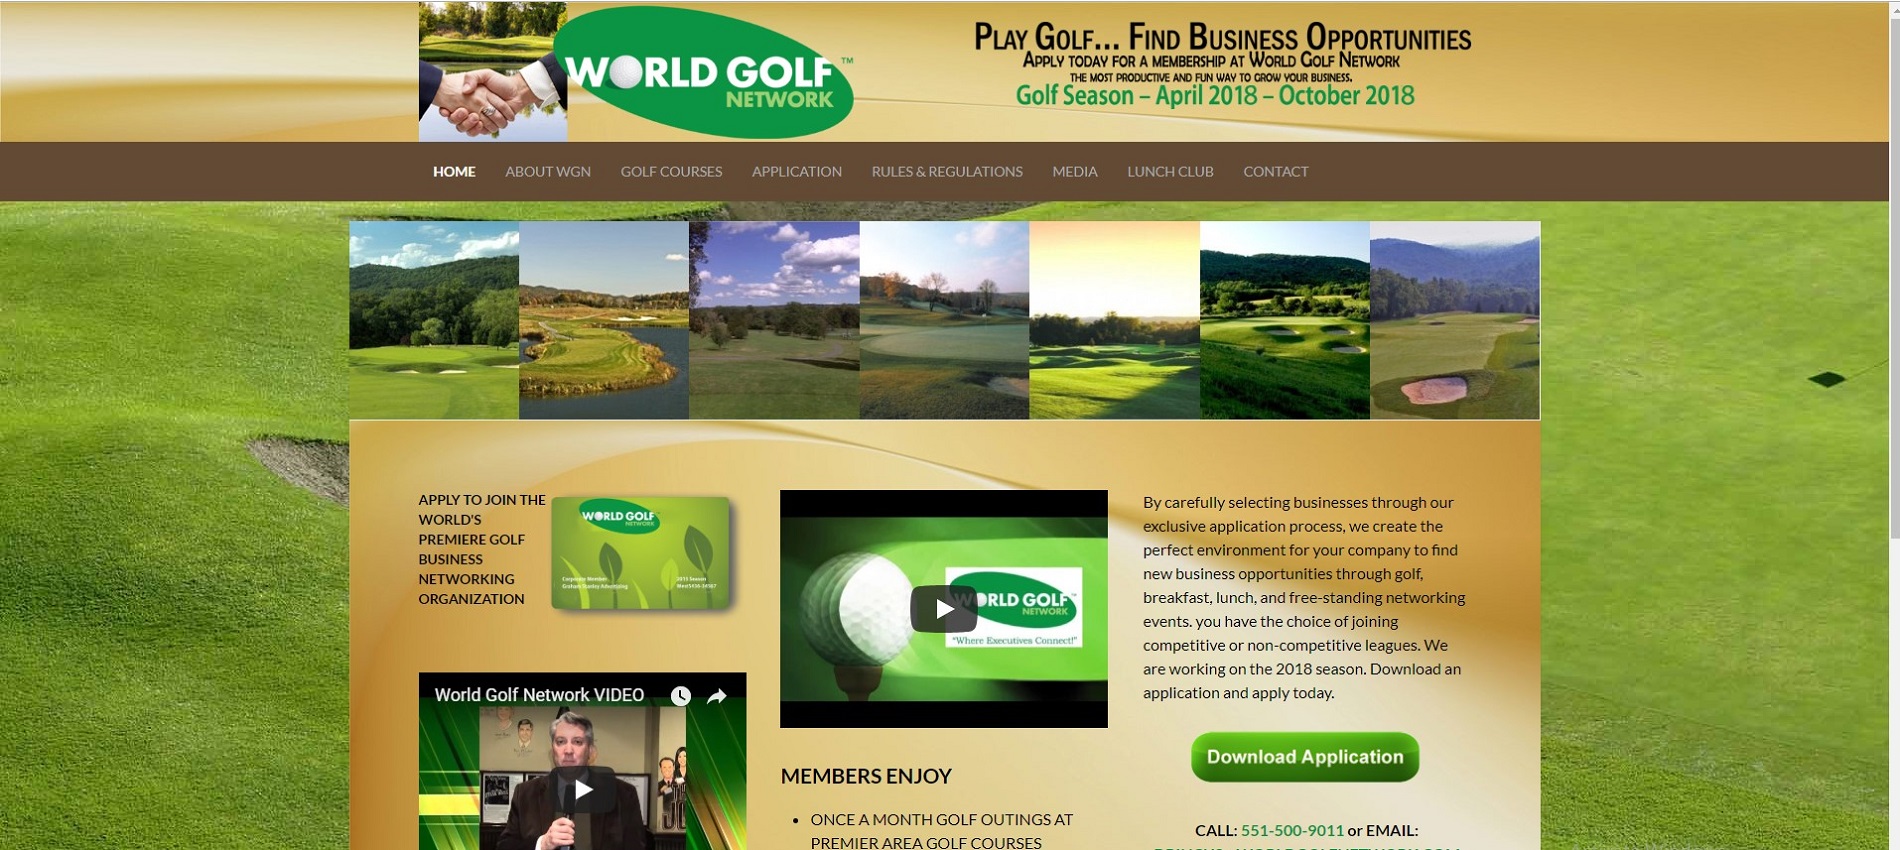 Thông tin tổng quan, khó khăn và kết quả đạt được của dự án World Golf Network